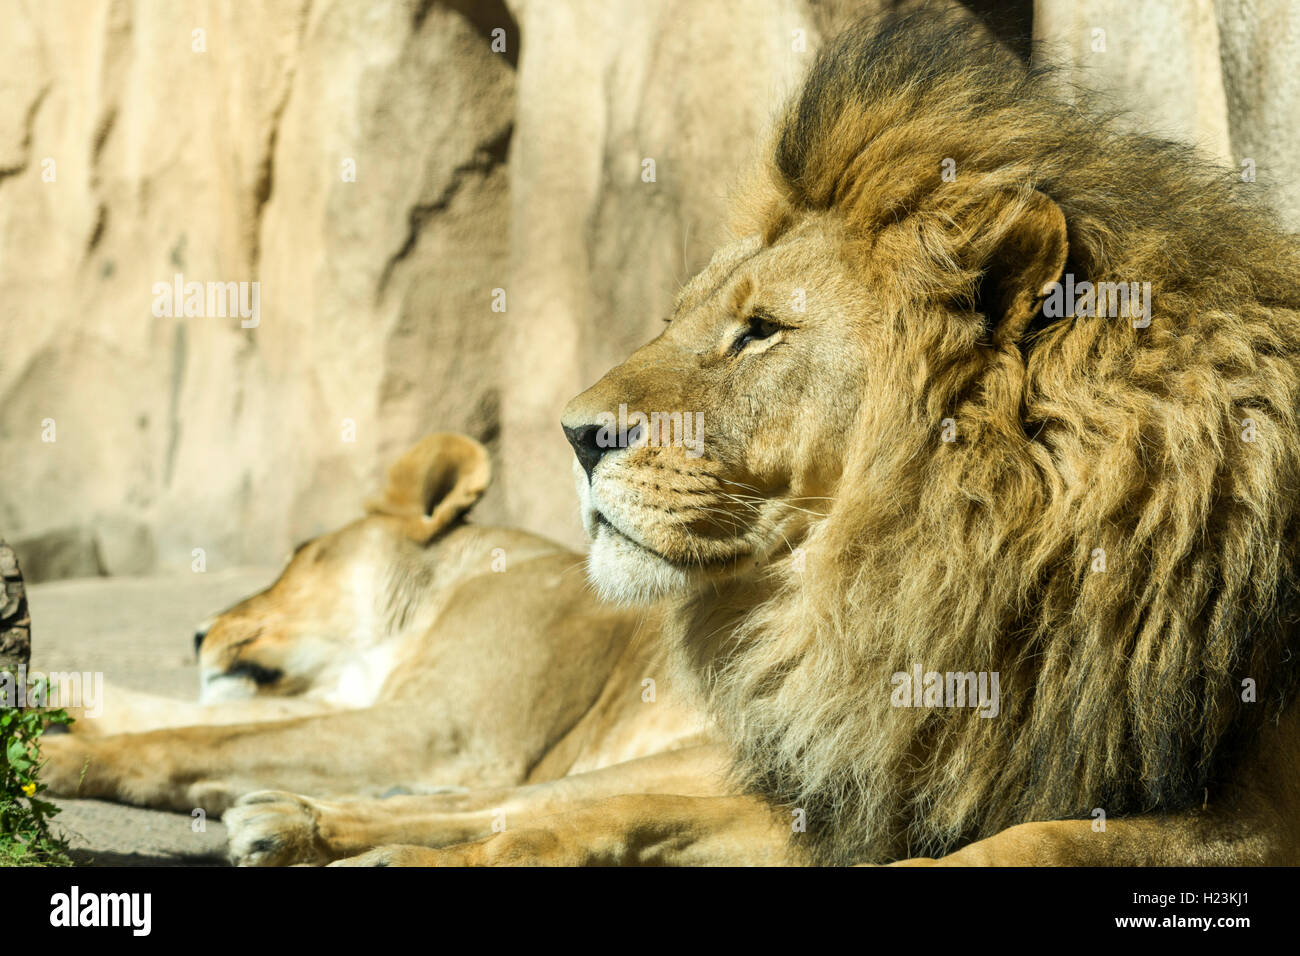 Homme African lion (Panthera leo) est allongé sur le sol, captive, Dresde, Saxe, Allemagne Banque D'Images